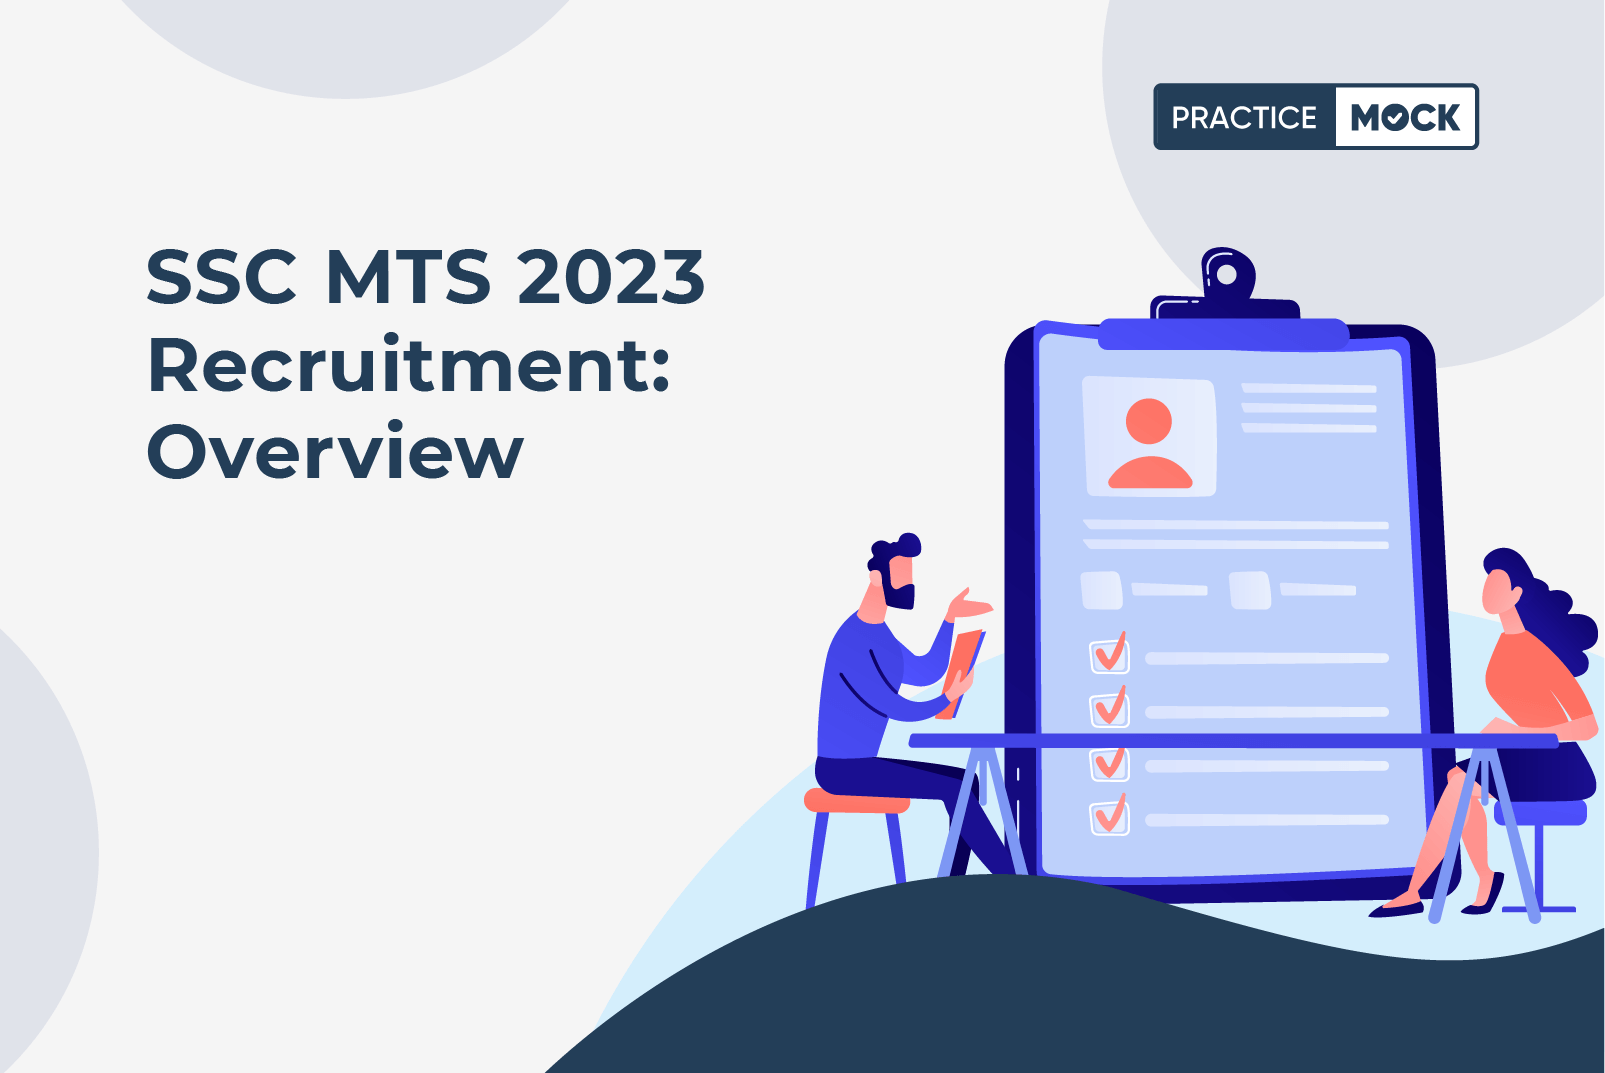 SSC MTS Recruitment 2023: Overview